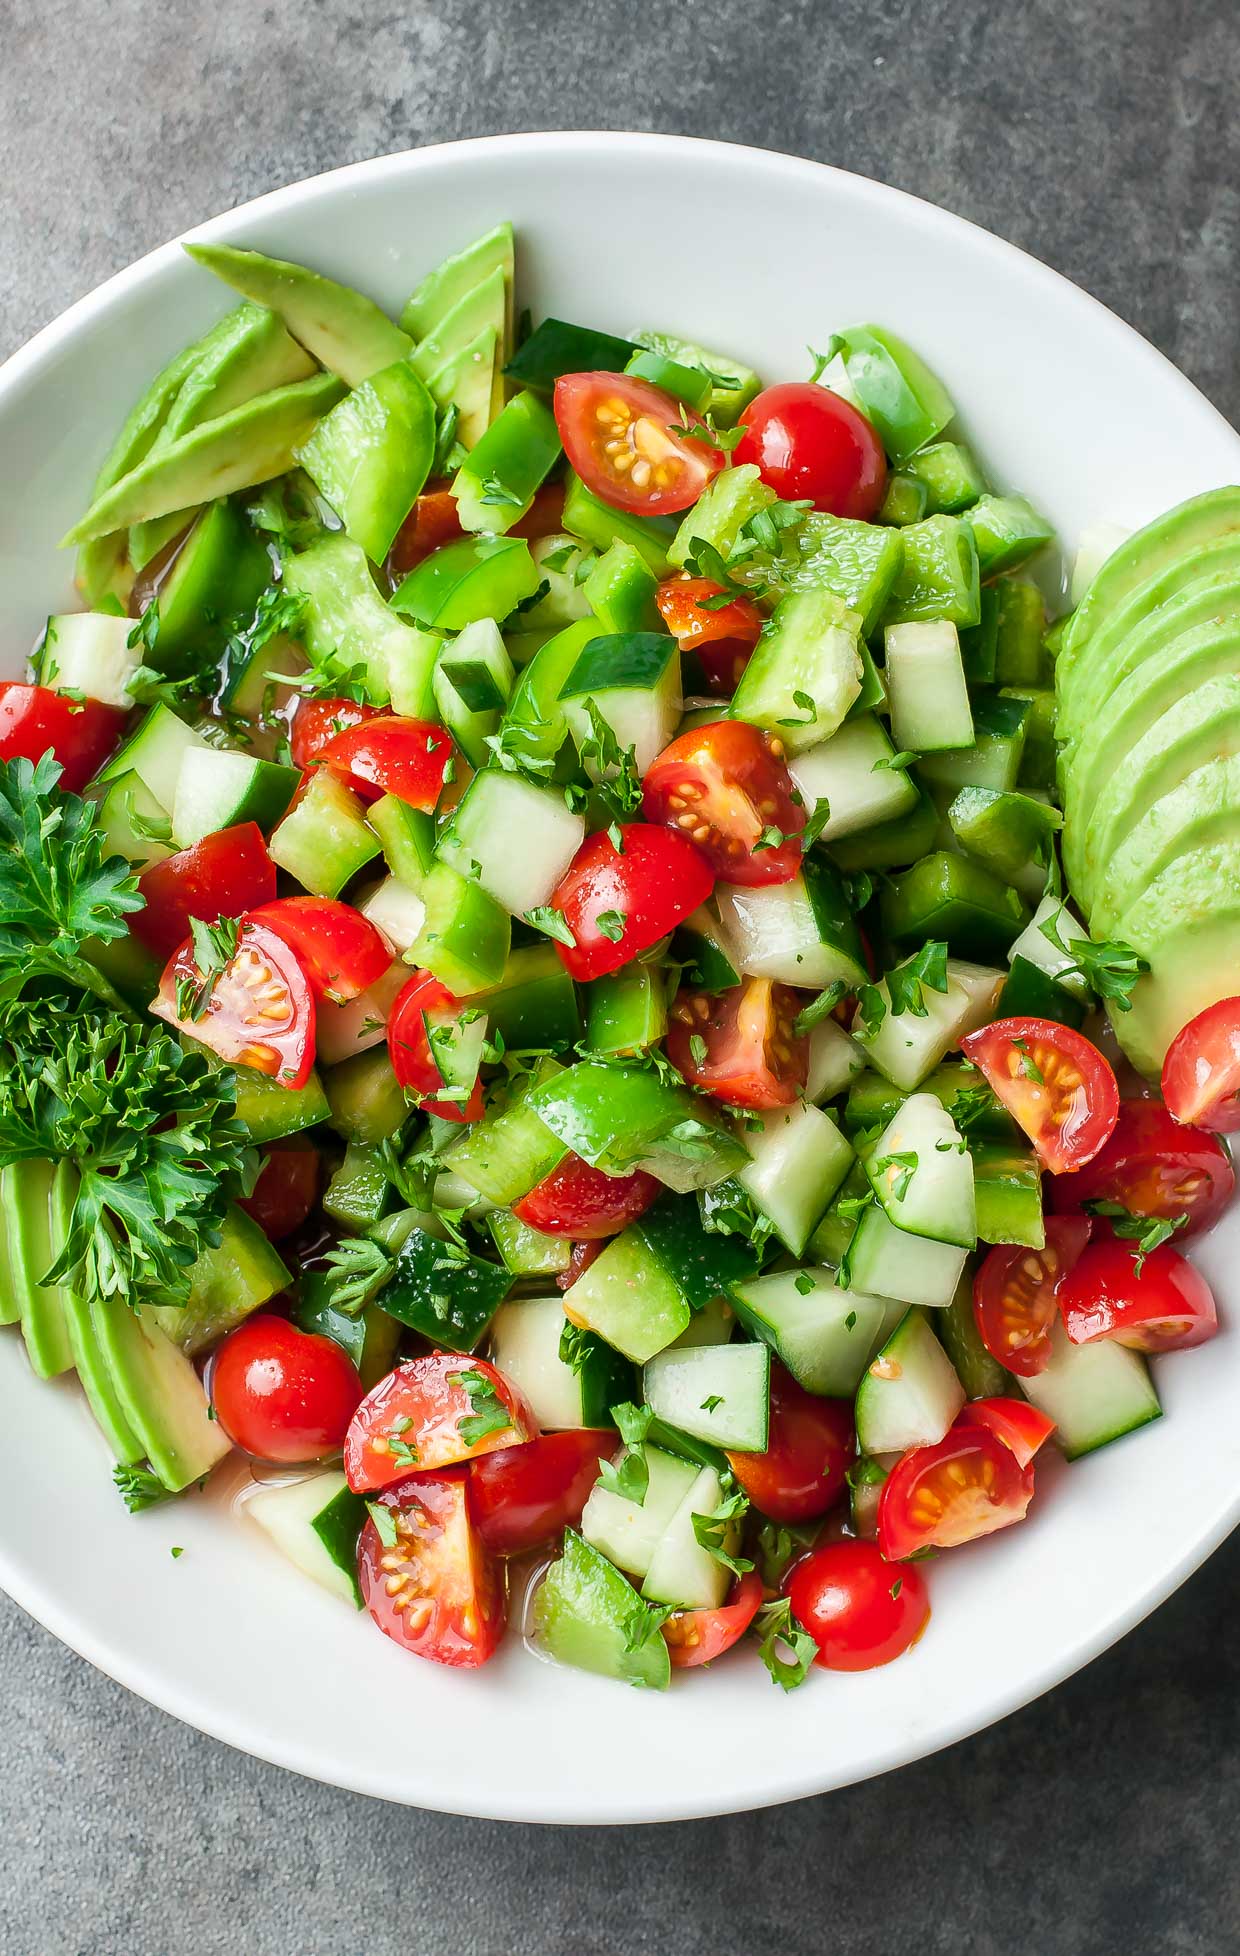 Tasty Salad Recipes - Healthy Tomato Cucumber Avocado Salad